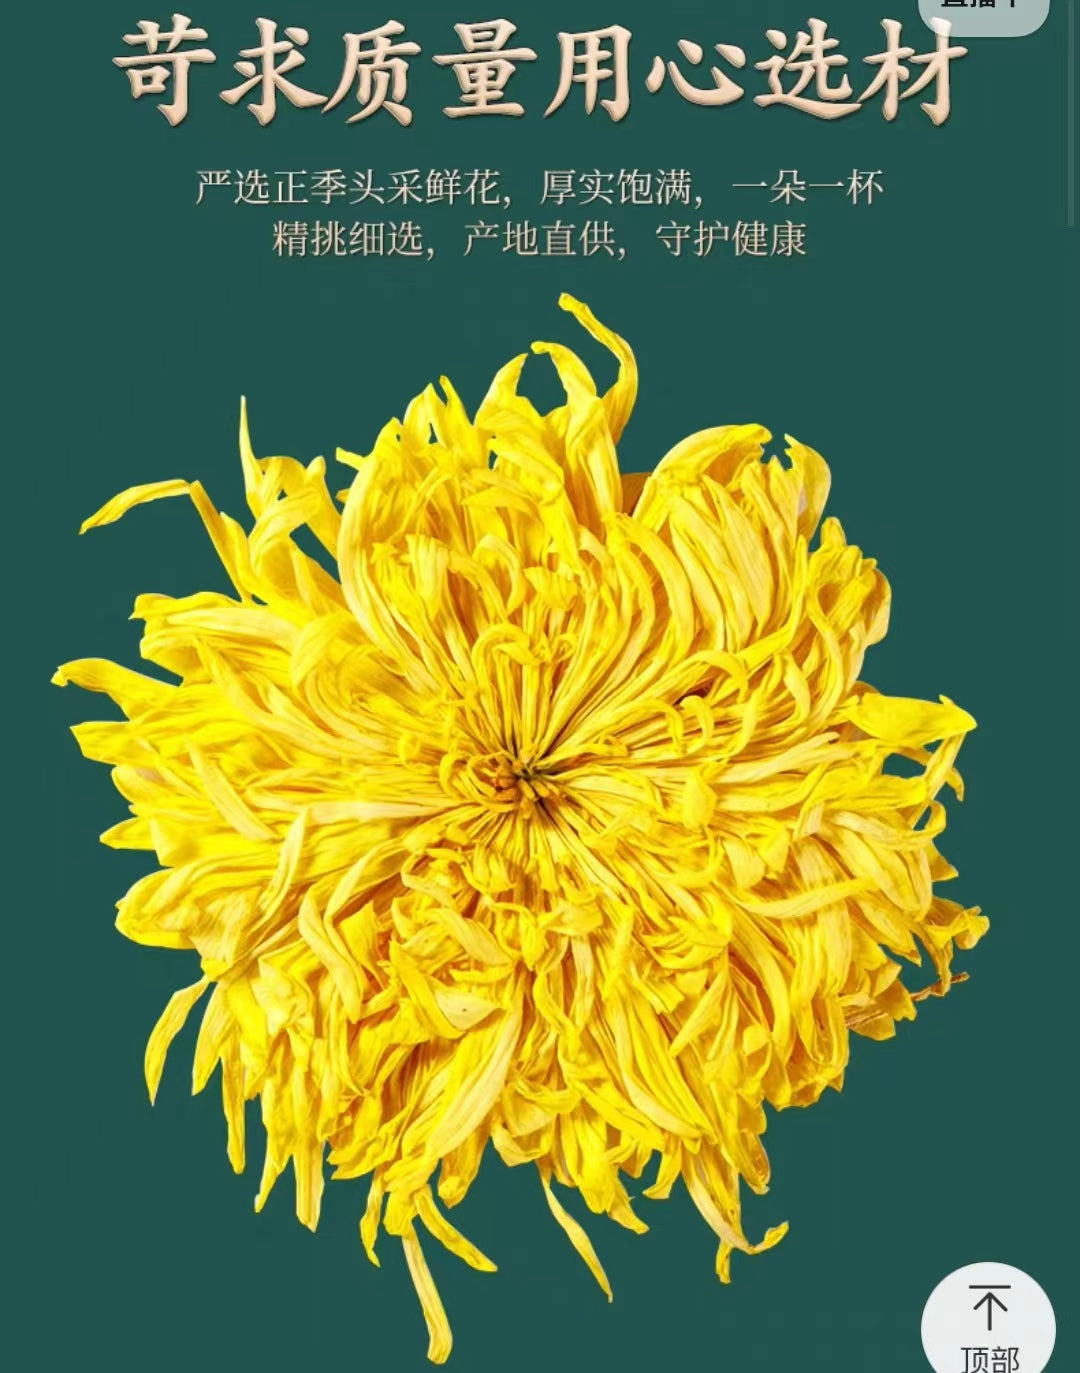 Chinese Tea- Yellow Chrysanthemum Tea